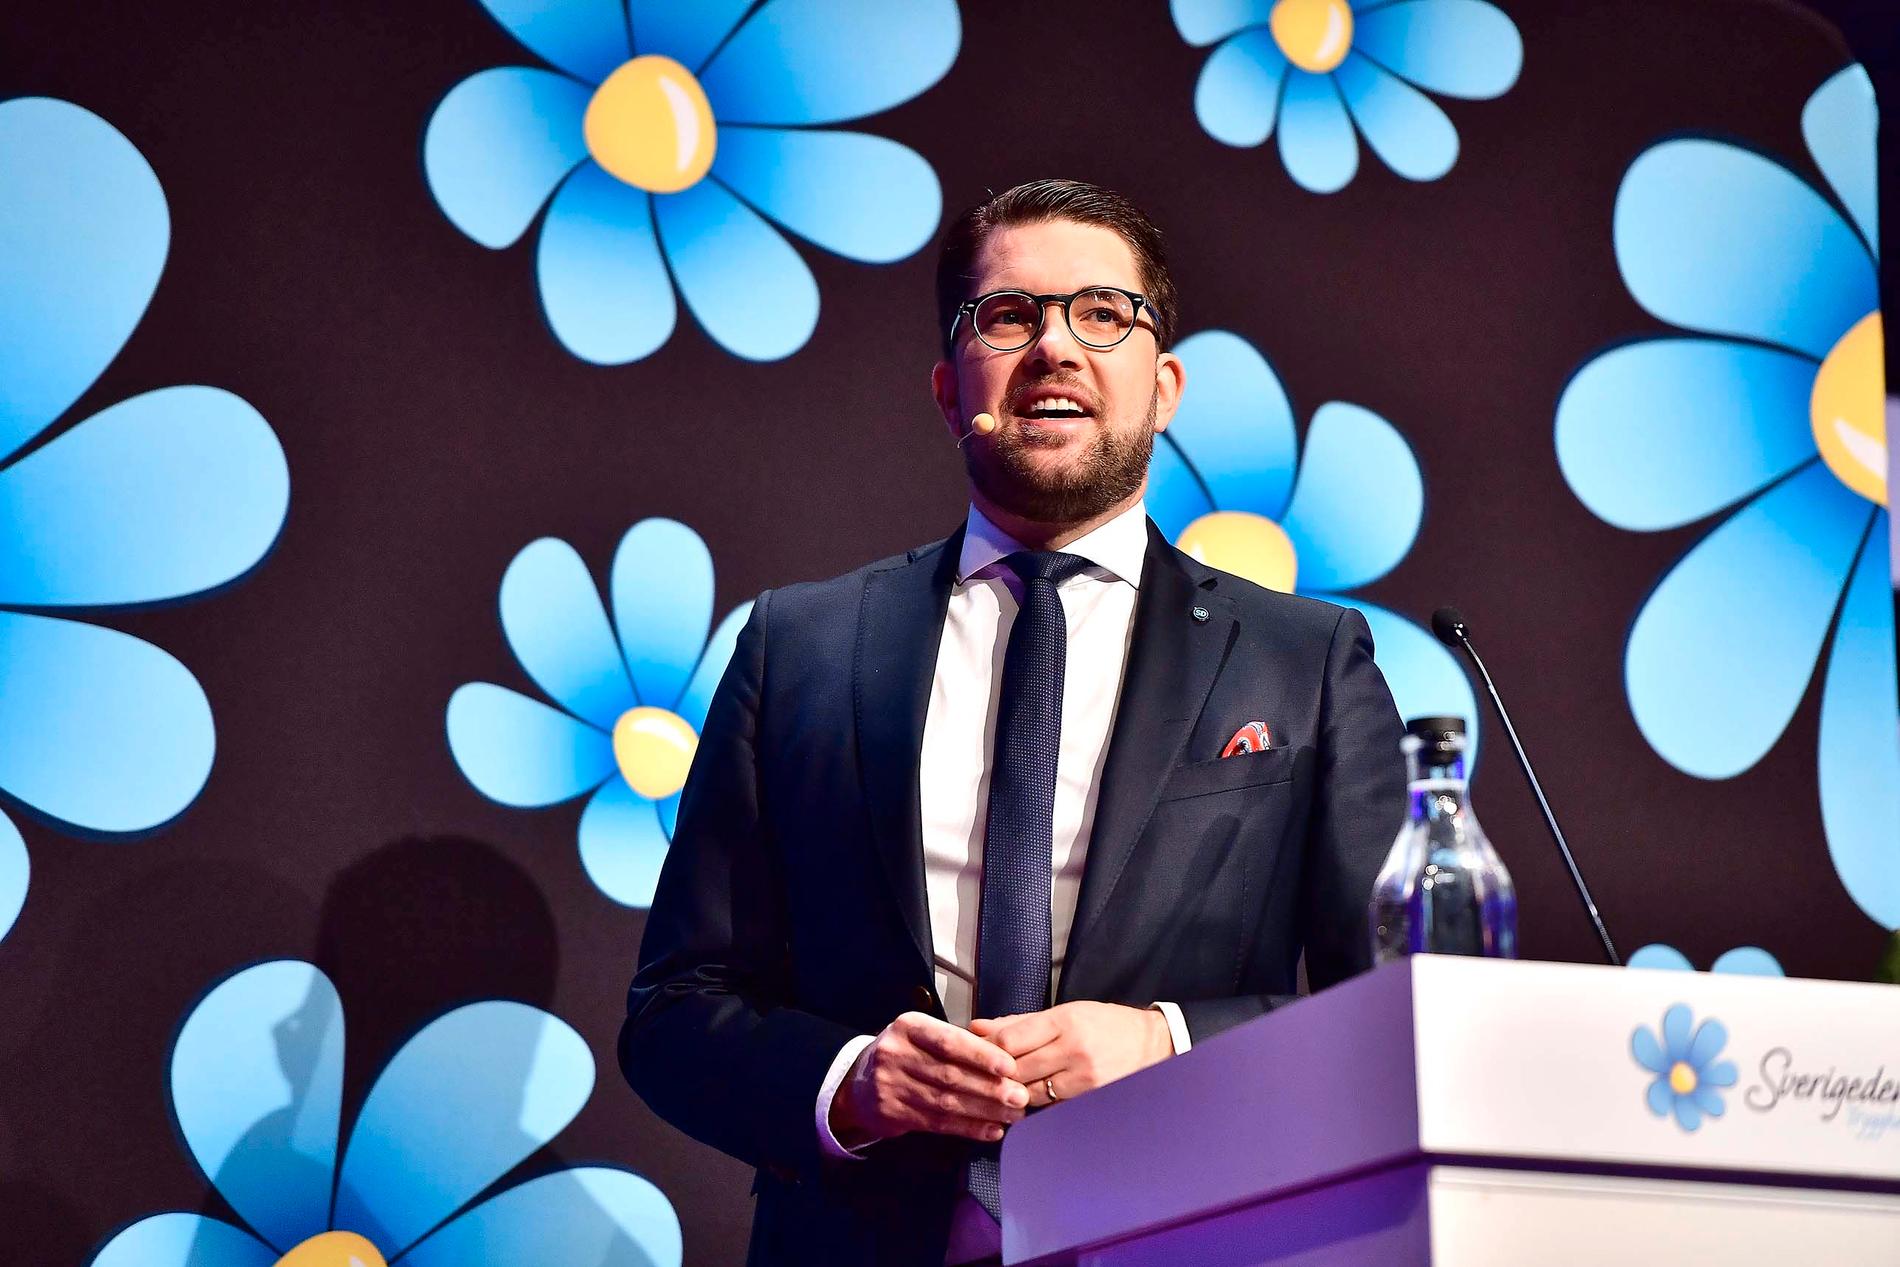 Sverigedemokraternas partiledaren Jimmie Åkesson håller stora tal inför partikamraterna.